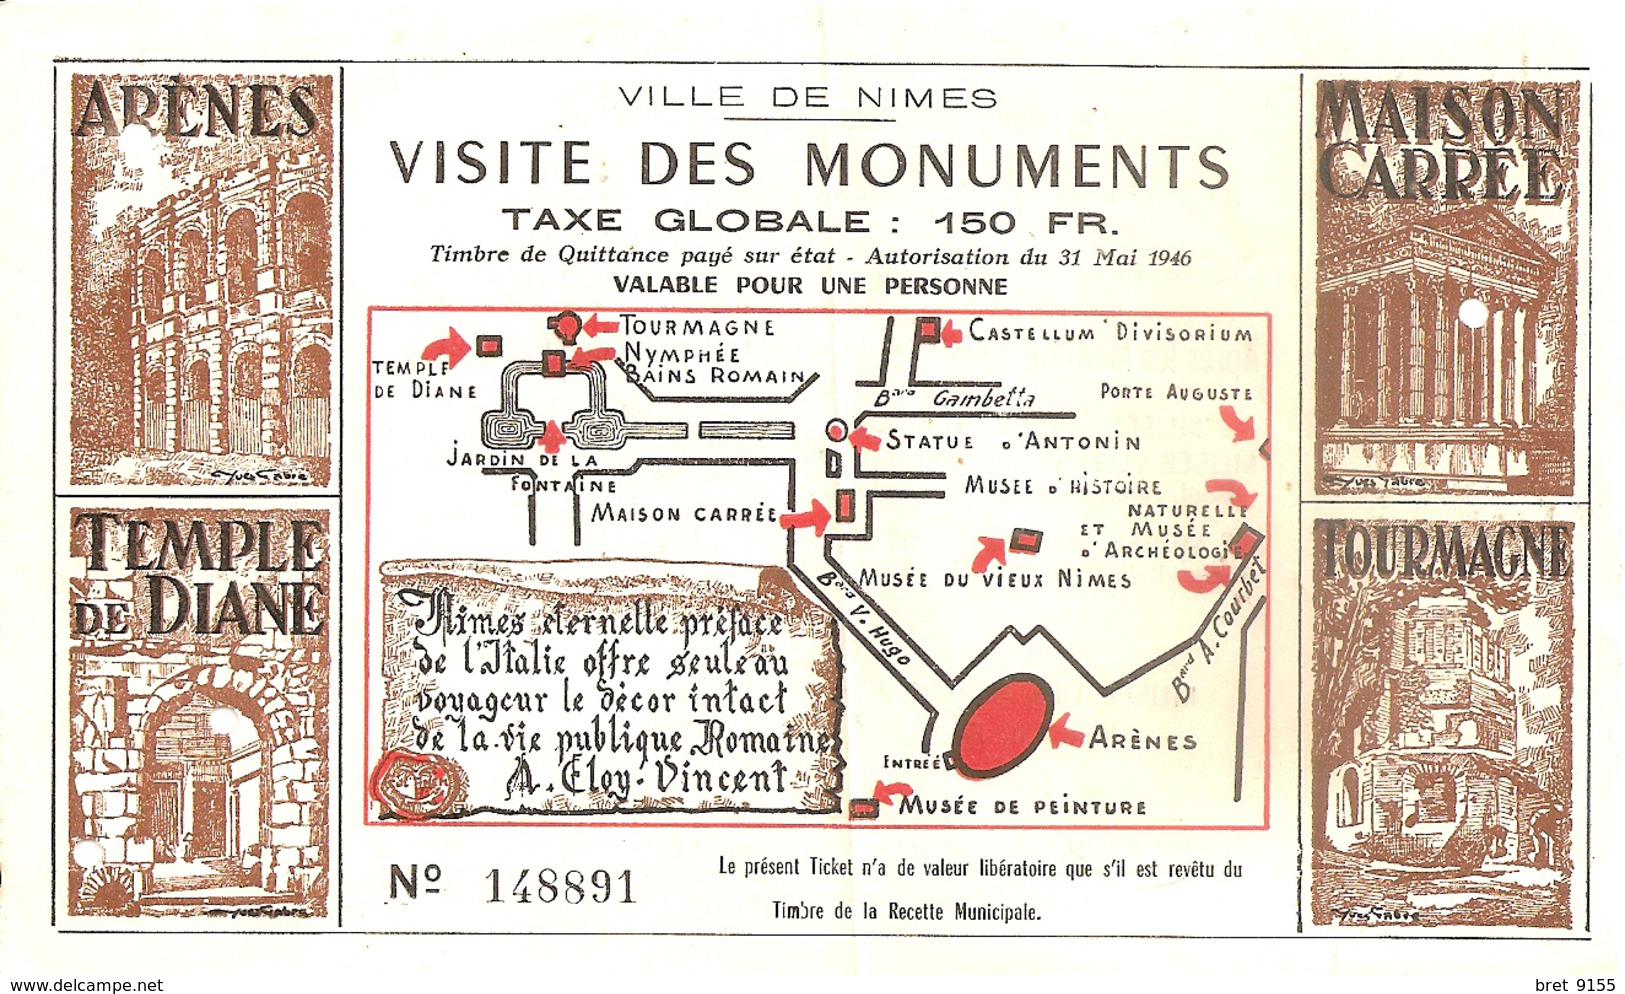 30 NIMES TICKET VISITE DES MONUMENTS 150 FR VALABLE POUR UNE PERSONNE N° 148891 AUTORISATION 1946 - Eintrittskarten